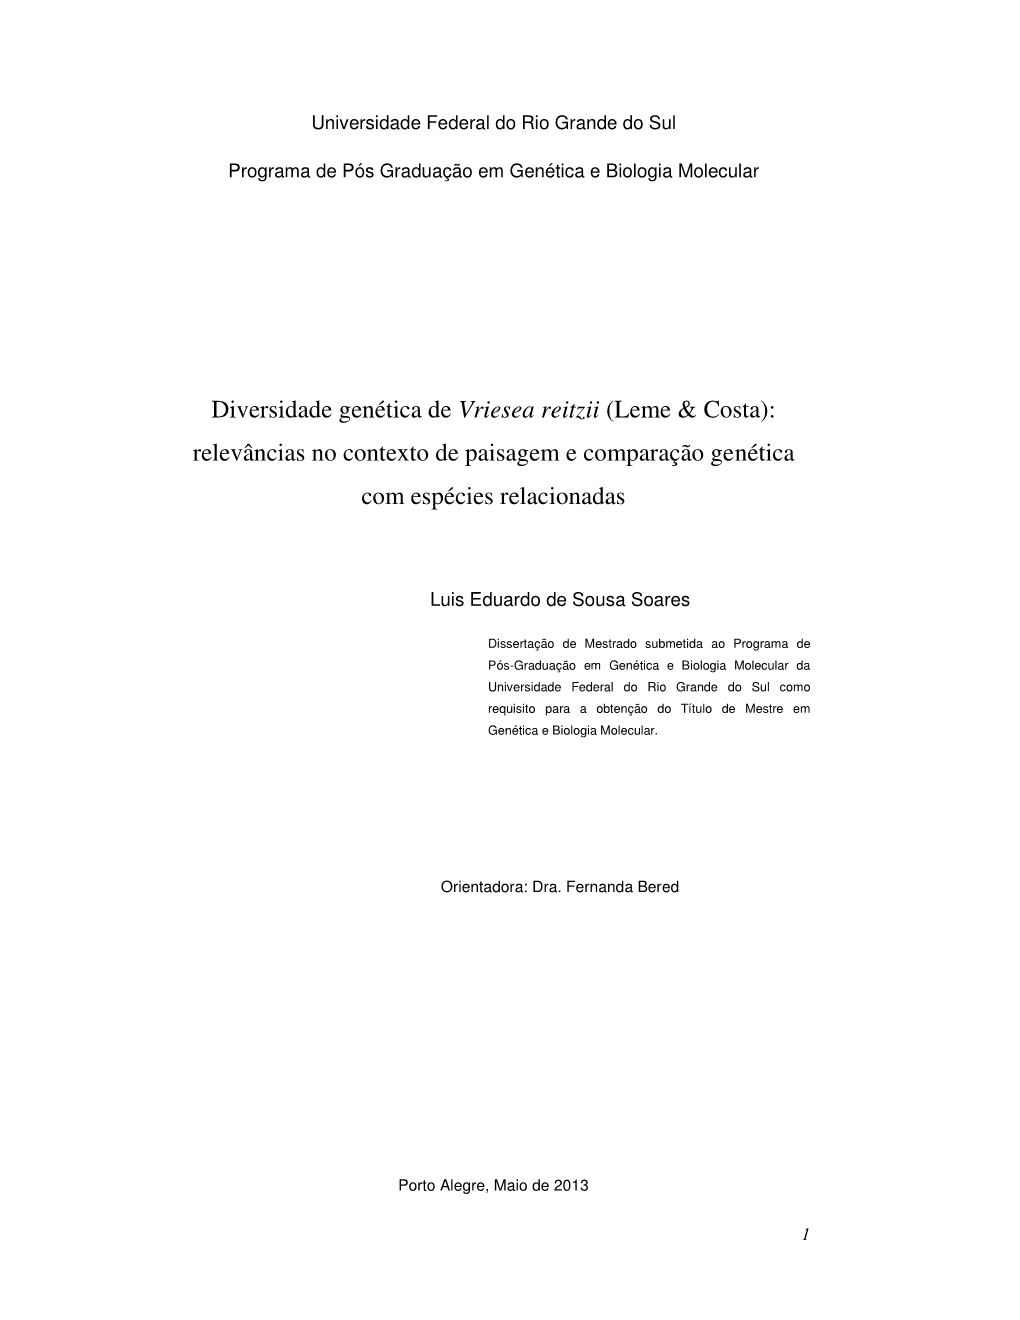 Diversidade Genética De Vriesea Reitzii (Leme & Costa): Relevâncias No Contexto De Paisagem E Comparação Genética Com Espécies Relacionadas